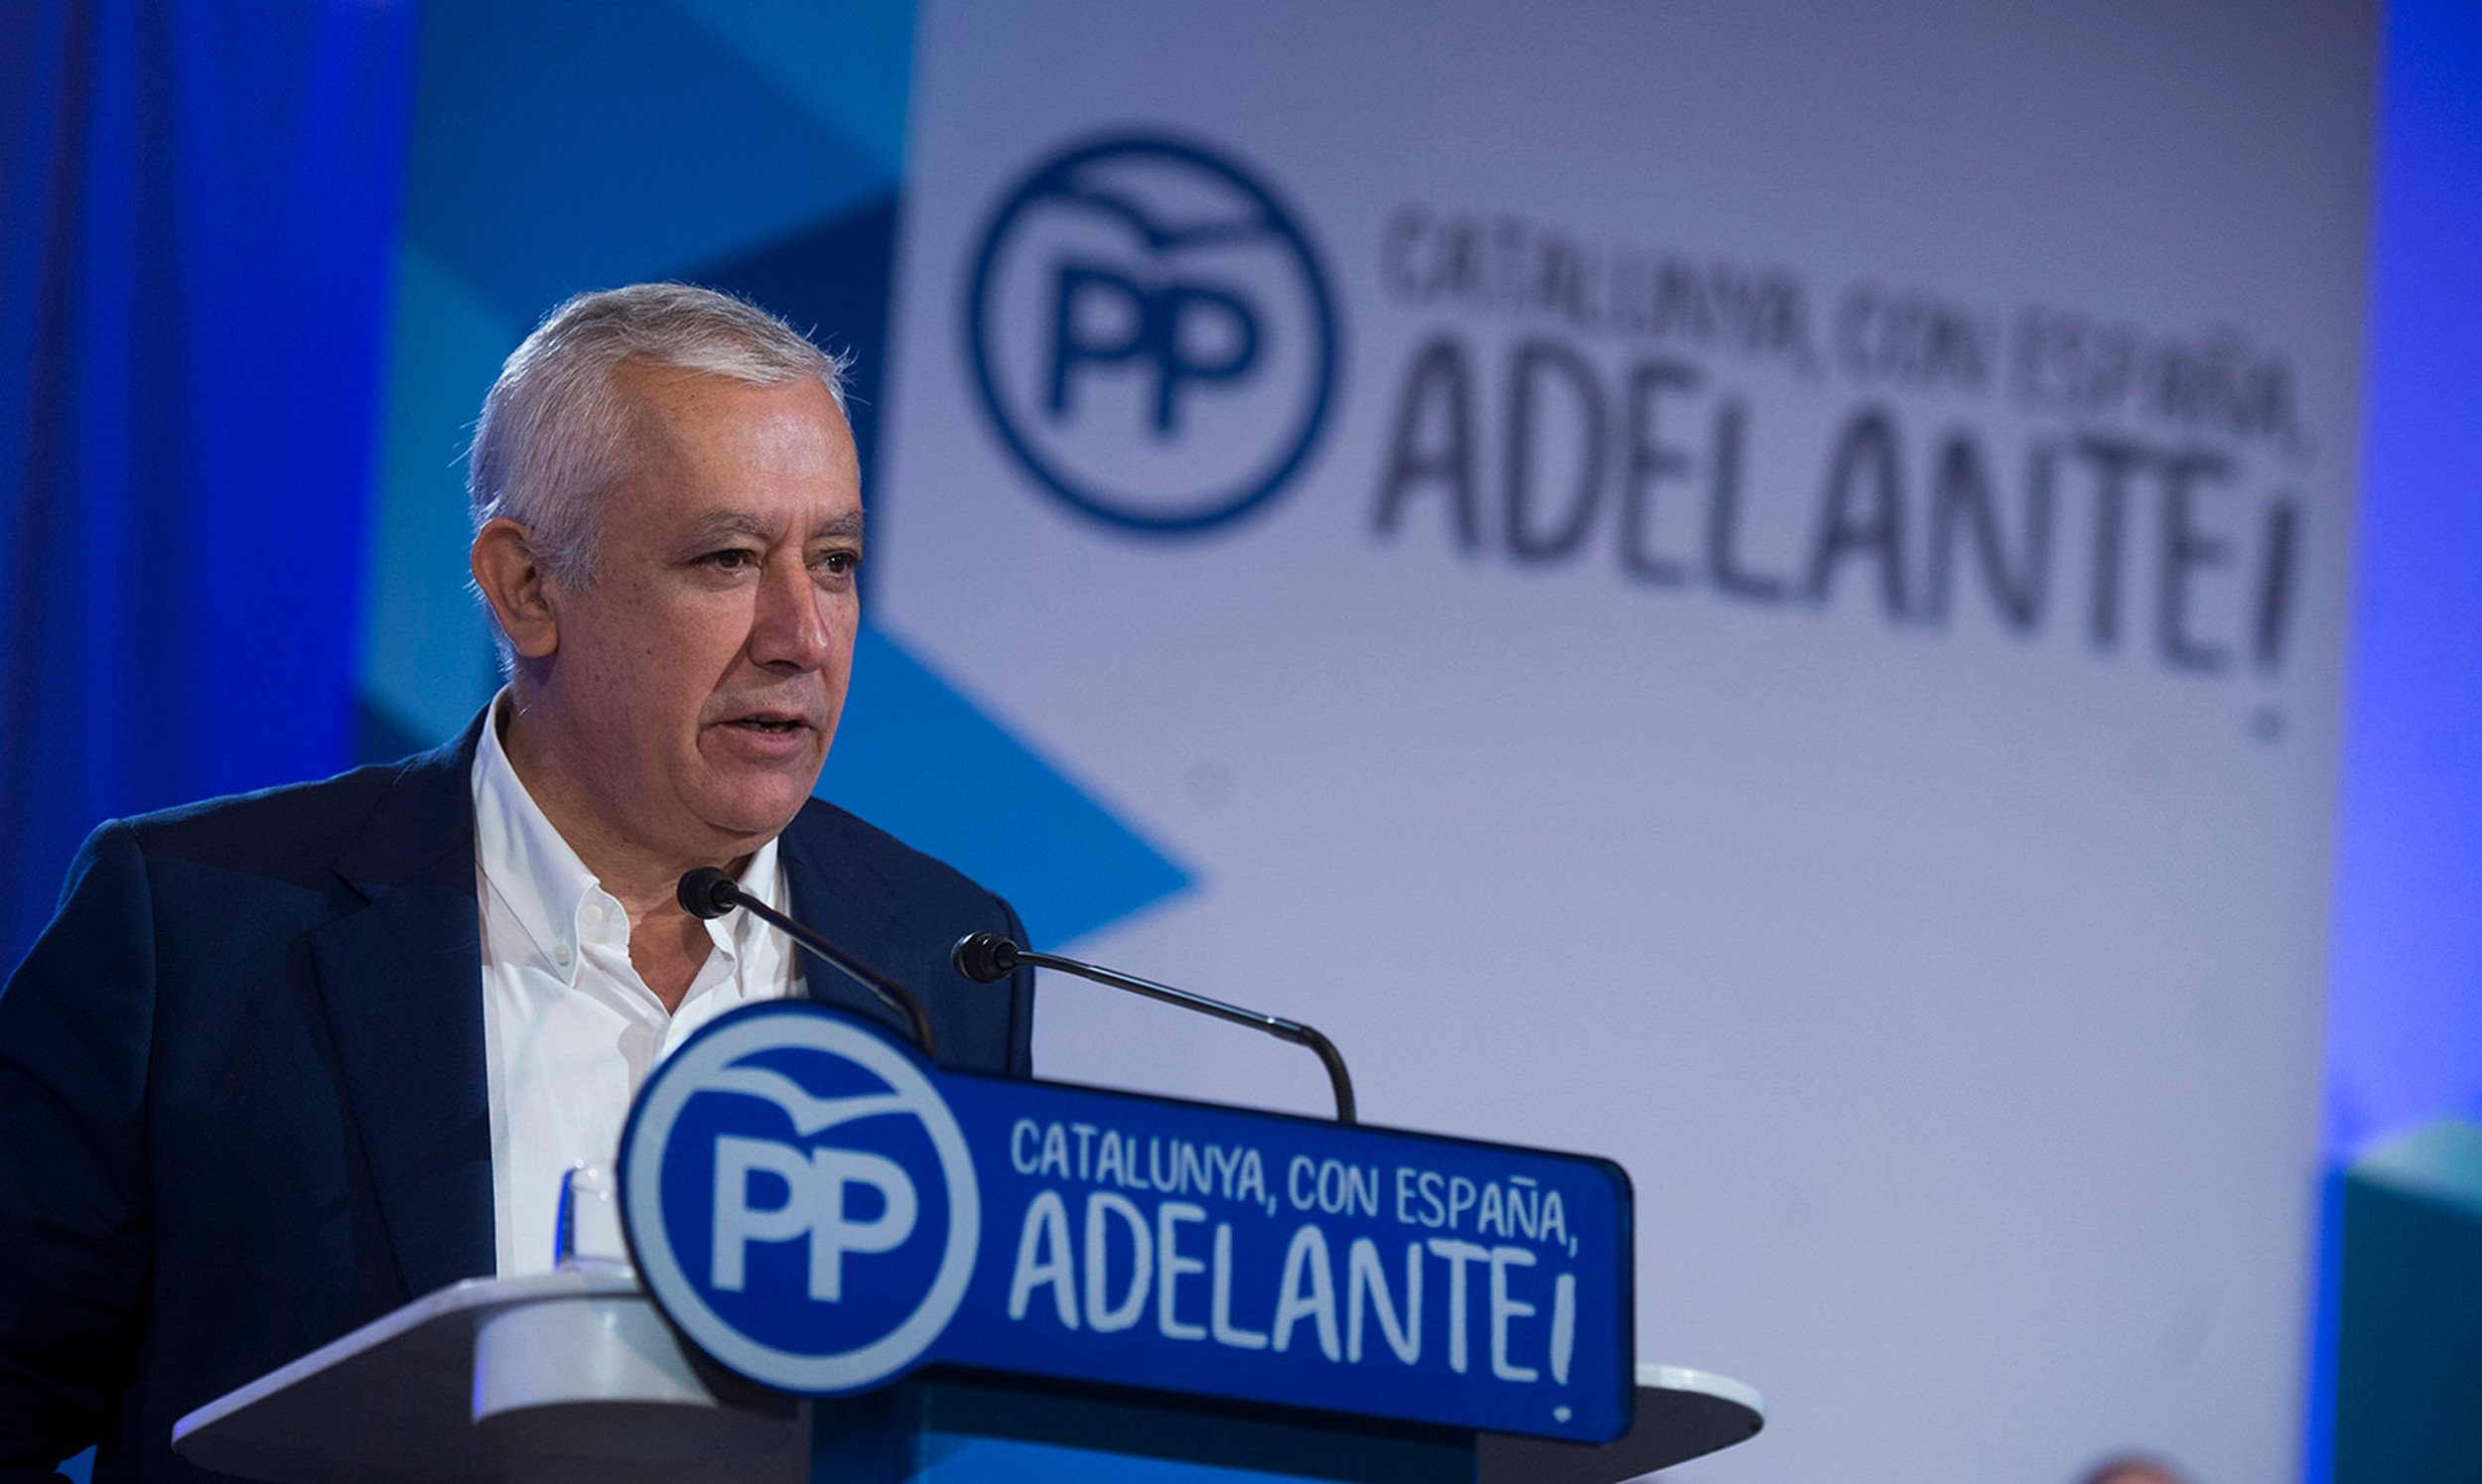 El PP adverteix que reaccionarà amb "mesura" i "no caurà en la trampa" de Puigdemont